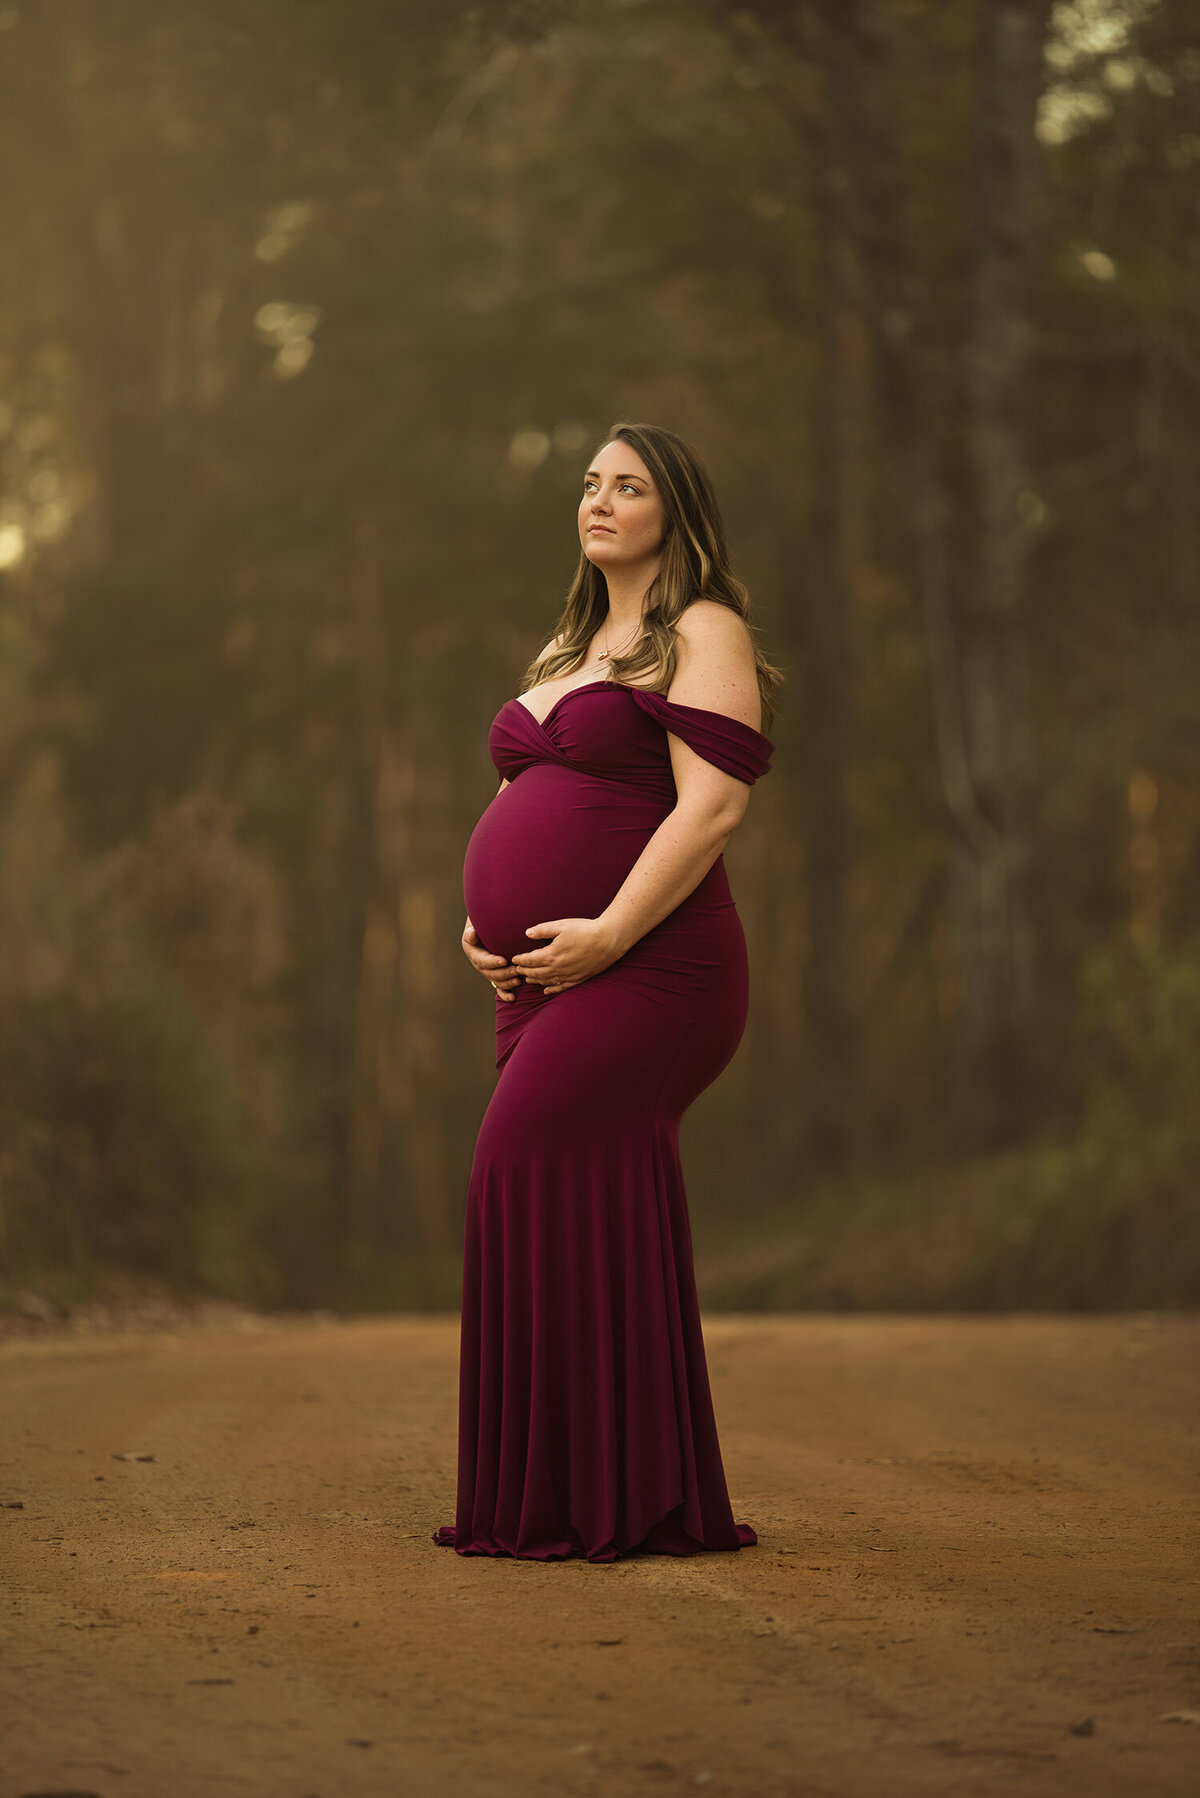 Jacksonville FL maternity photographer, maternity photography near me, get maternity photos taken Jacksonville FL